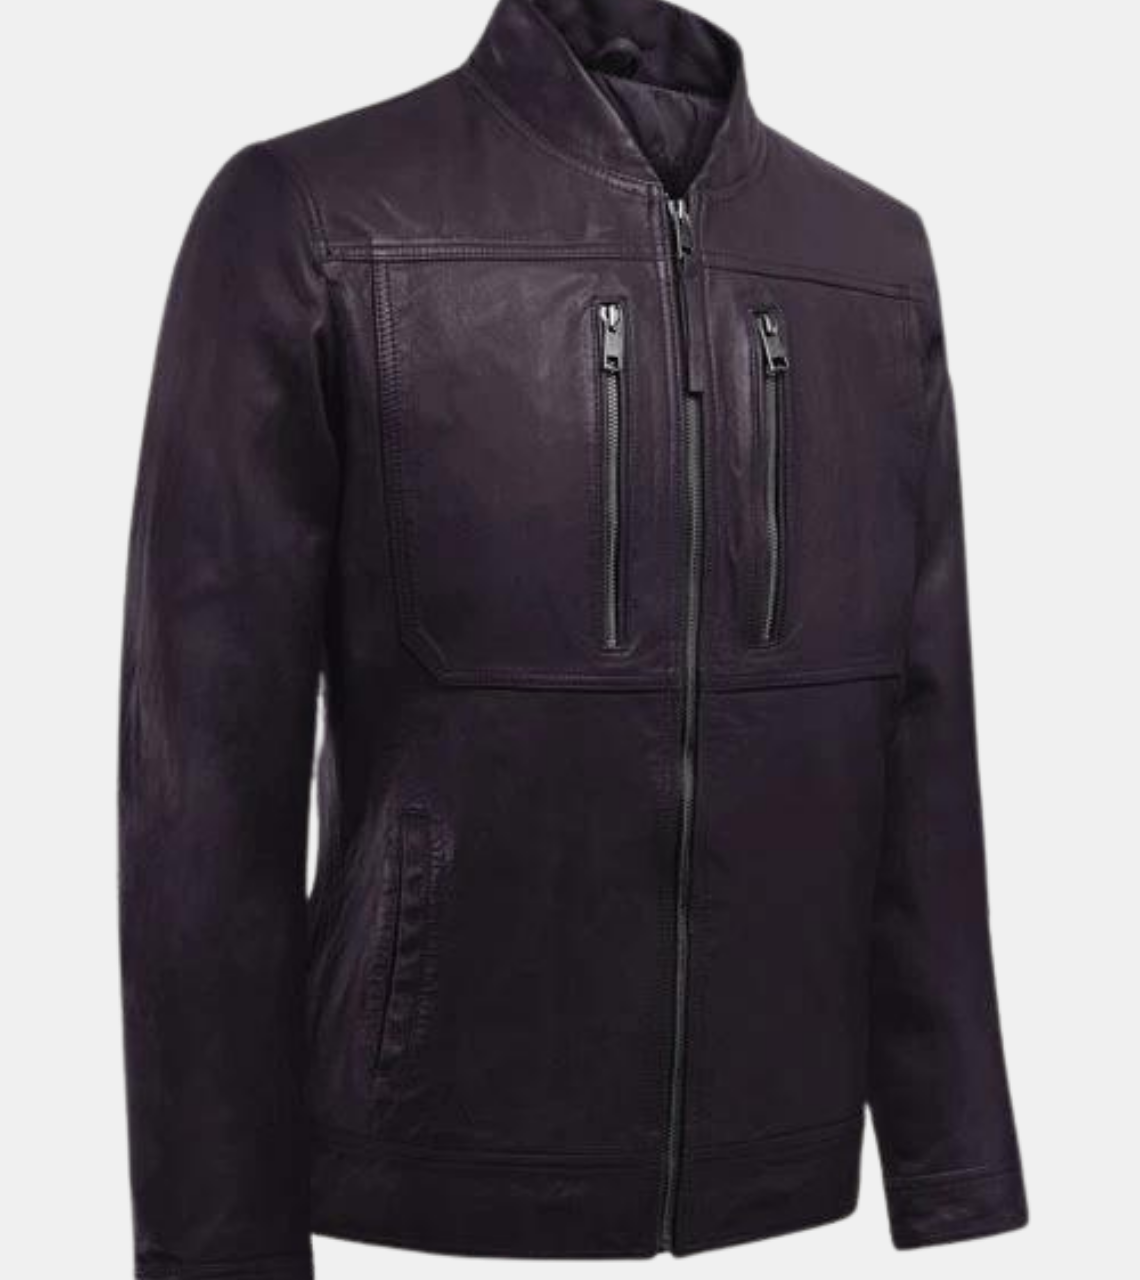  Men's Violet Leather Jacket